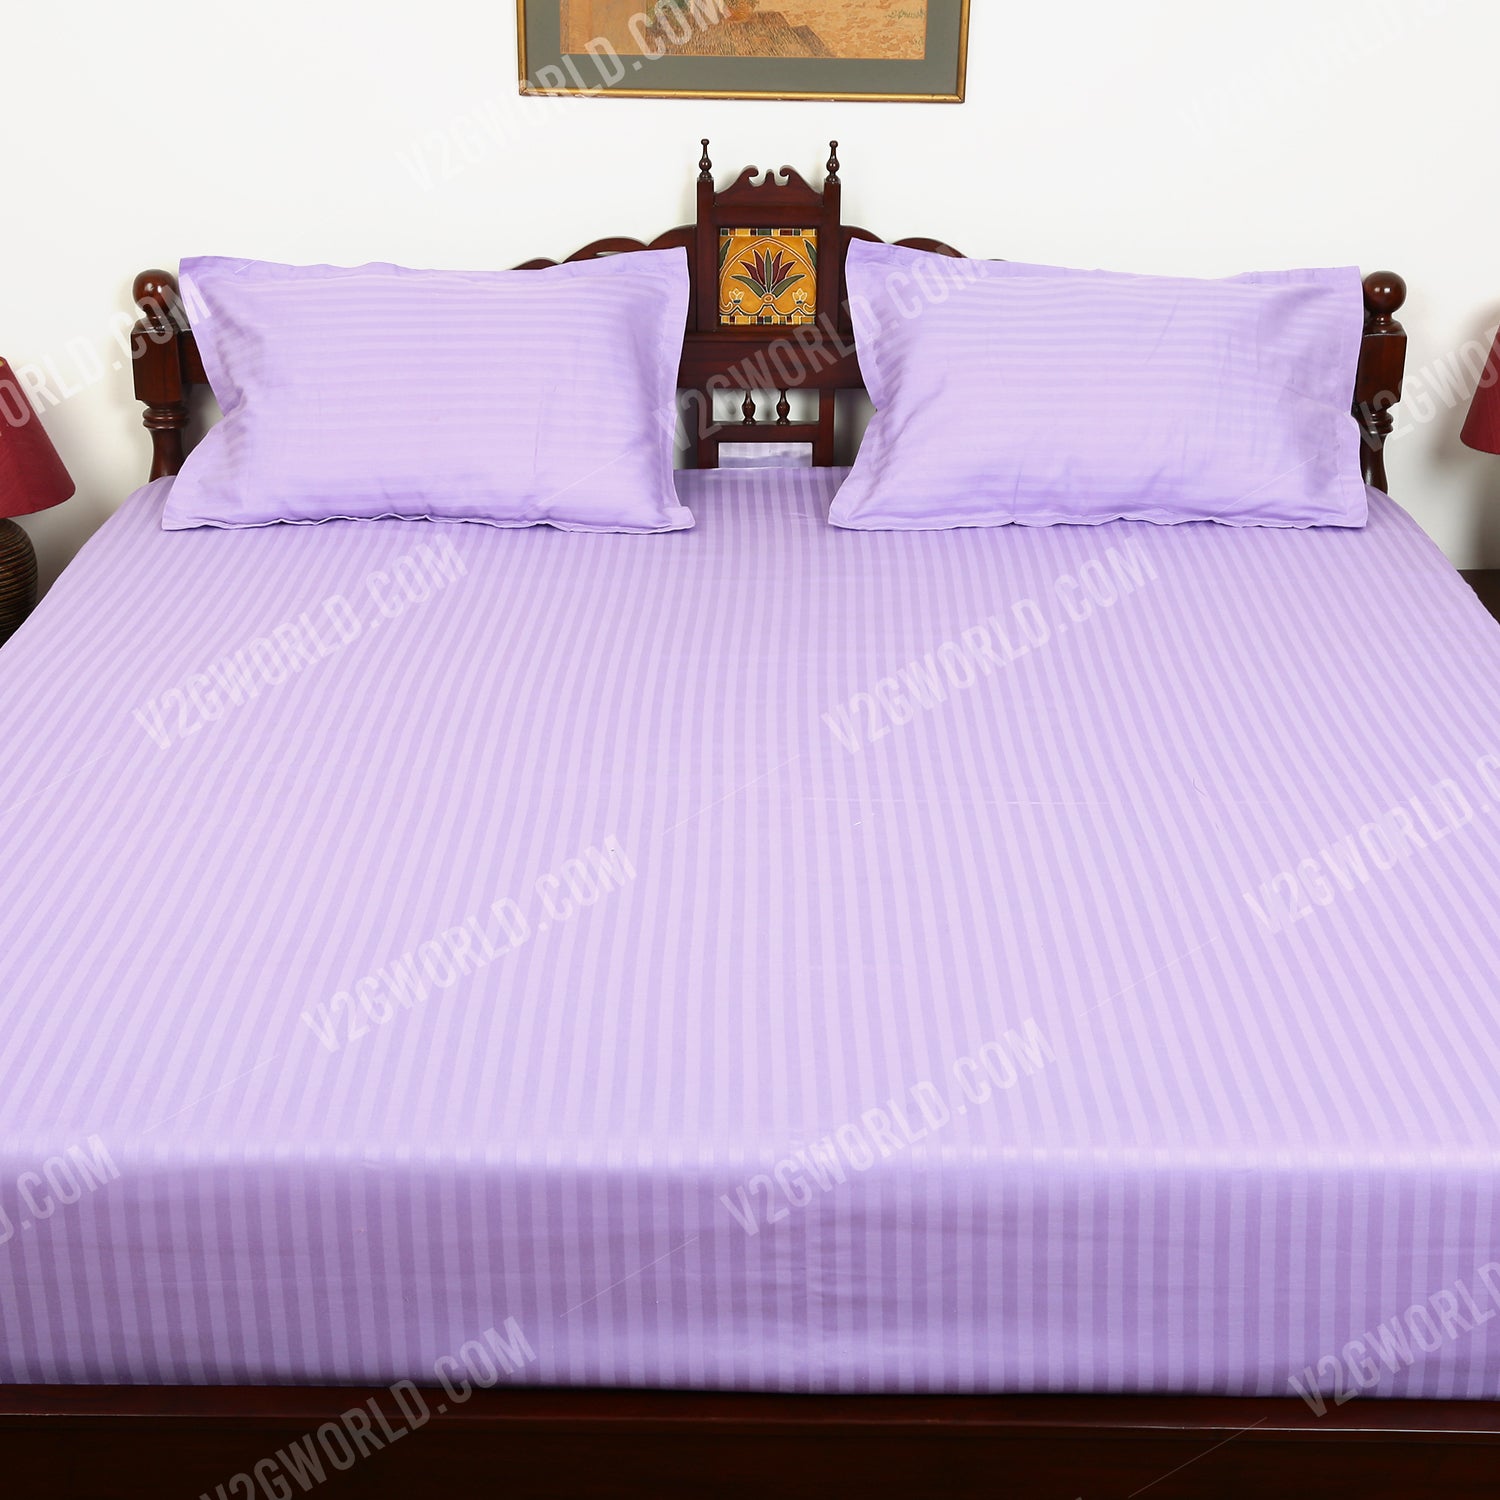 Plain Bedsheet - Double Bed - Lavender/Mauve